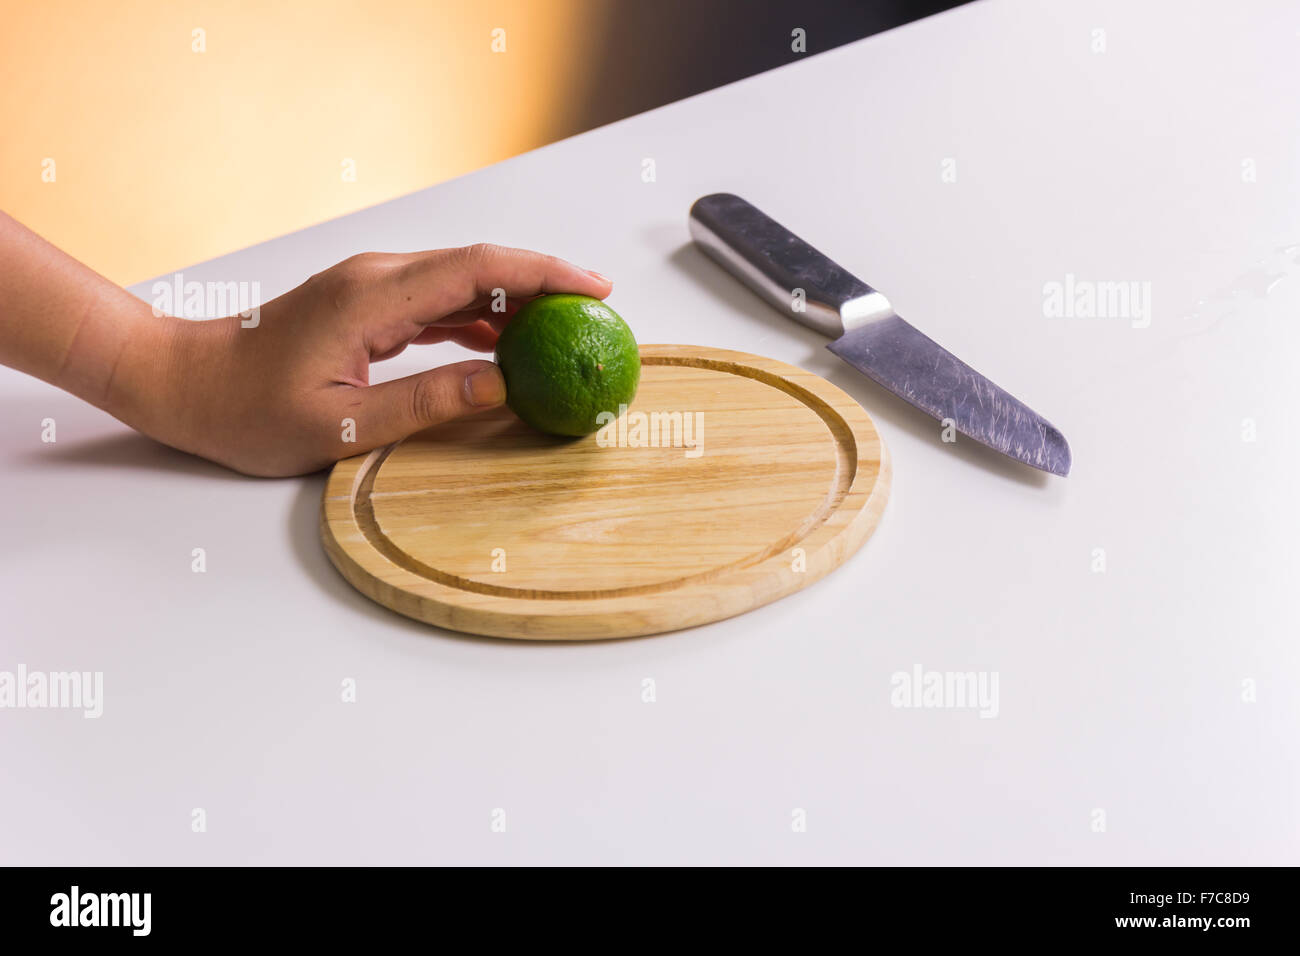 Fresco e acidulo verde lime o limone, tagliata a metà con il coltello sul tagliere Foto Stock